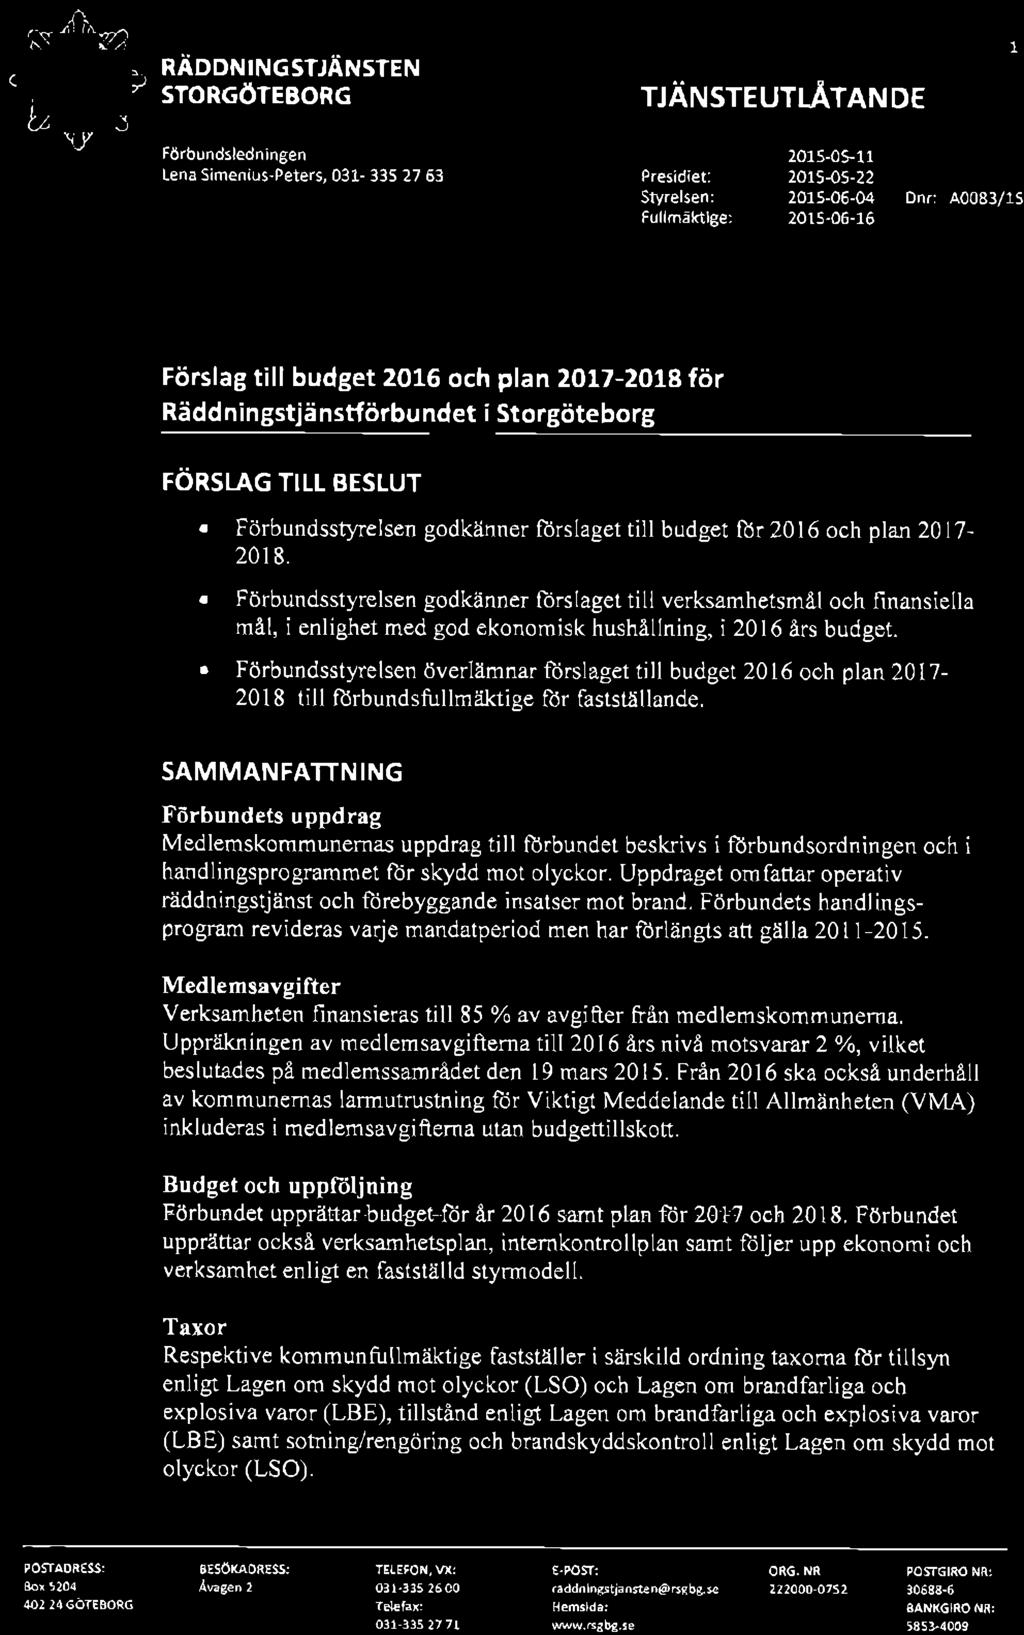 budget flor 2016 och plan 2017-201 8. Förbundsstyrelsen godkänner lorslaget till verksamhetsmål och finansiella må1, i enlighet med god ekonomisk hushållning, i 2016 års budget.